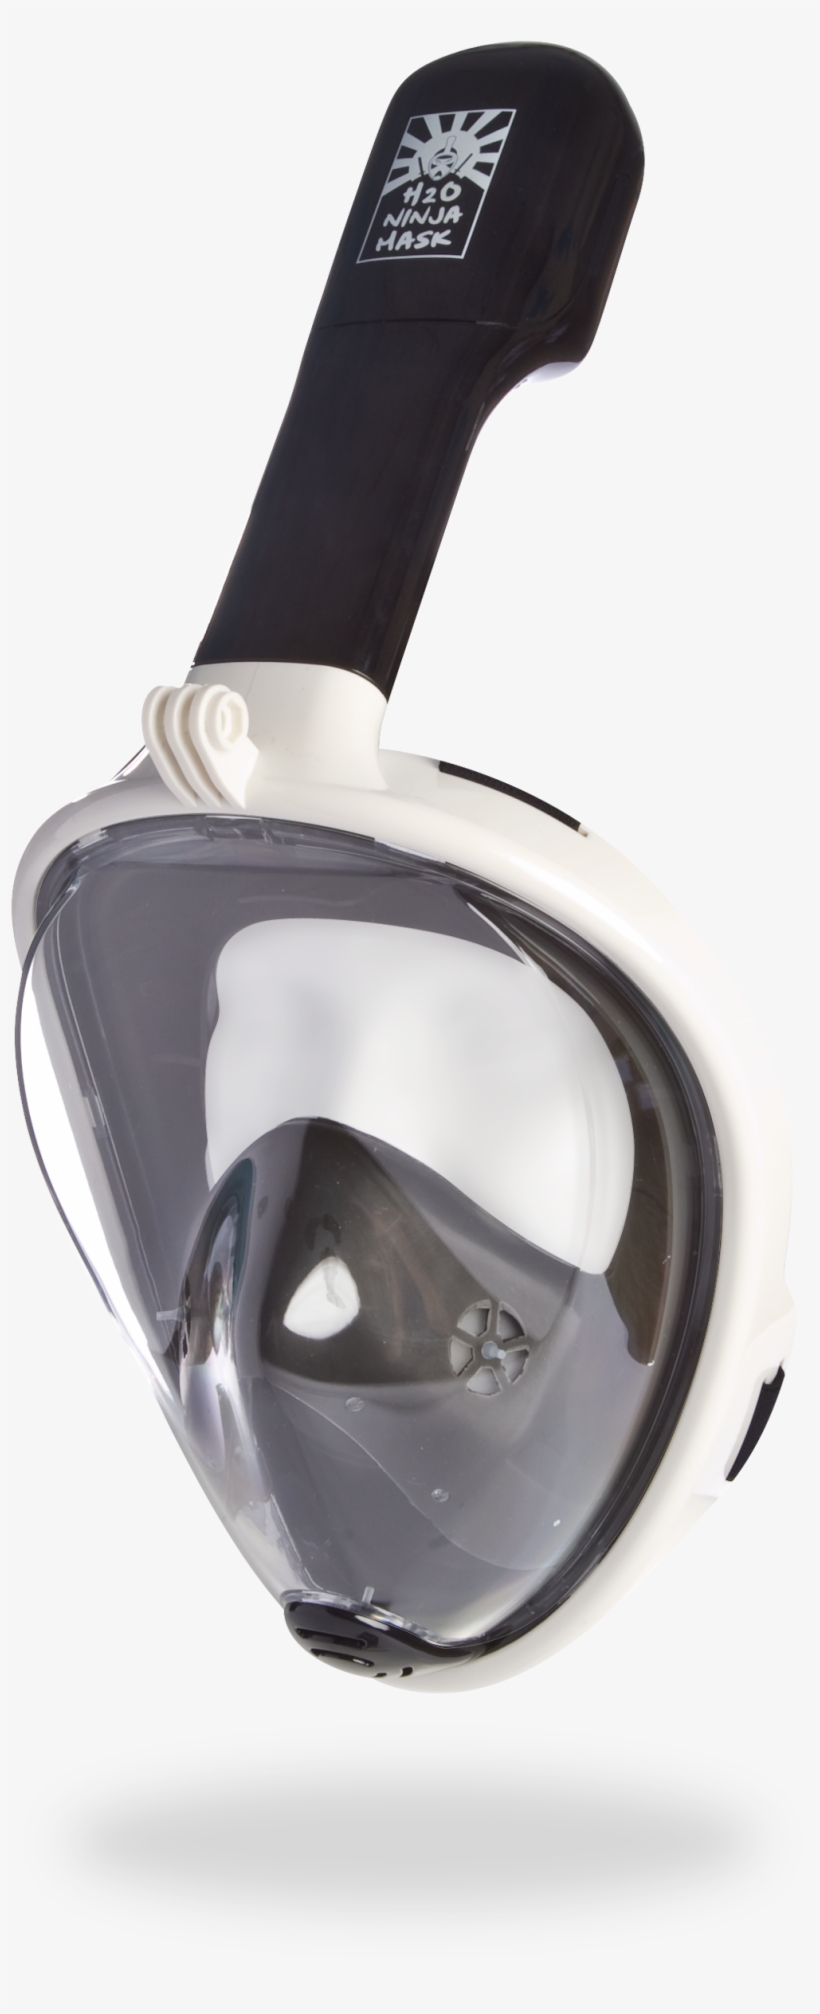 H20 Ninja Mask Full Face Snorkeling Mask - Diving Mask, transparent png #1208323